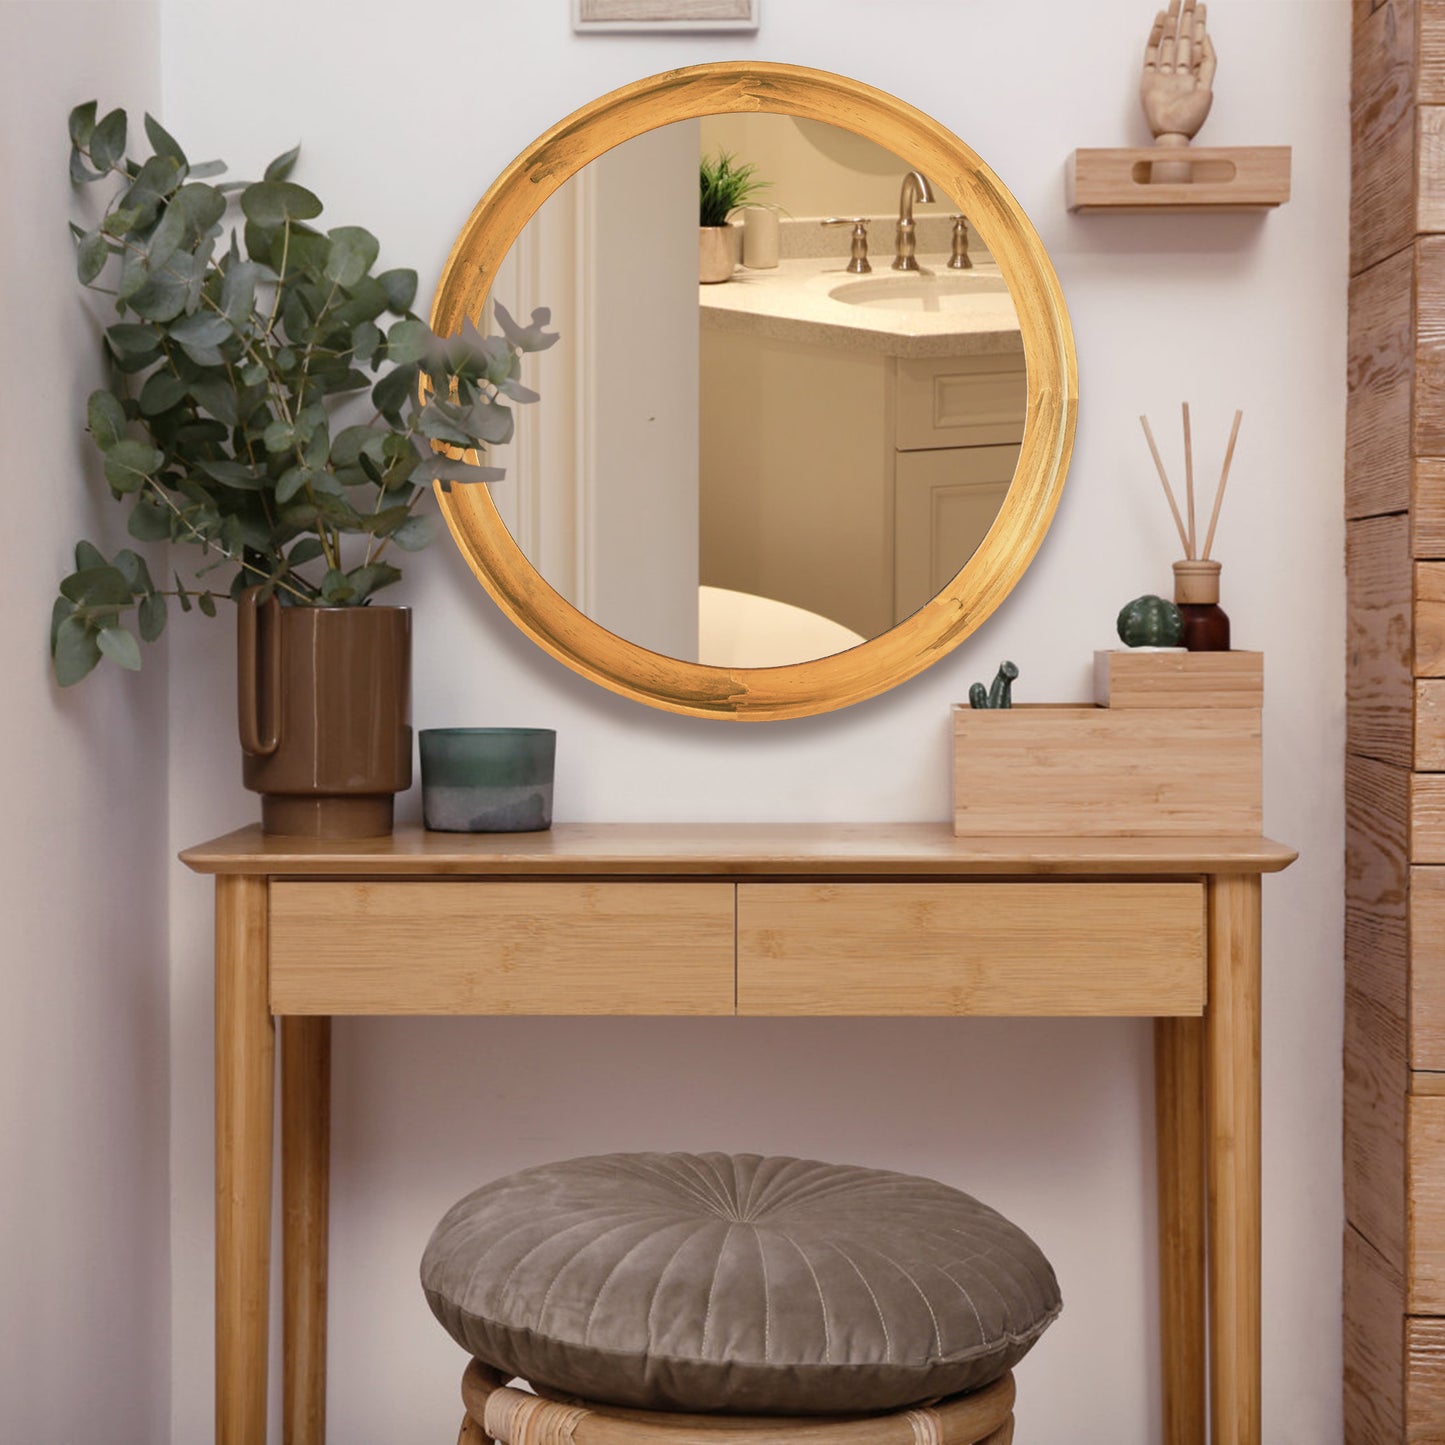 JIYUERLTD 14-Zoll-Wandspiegel aus Holz, runder Retro-Spiegel, dekorativer HD-Spiegel für Badezimmer, Eingangsbereiche, Wohnzimmer und Gästetoilette, Schlafzimmer 